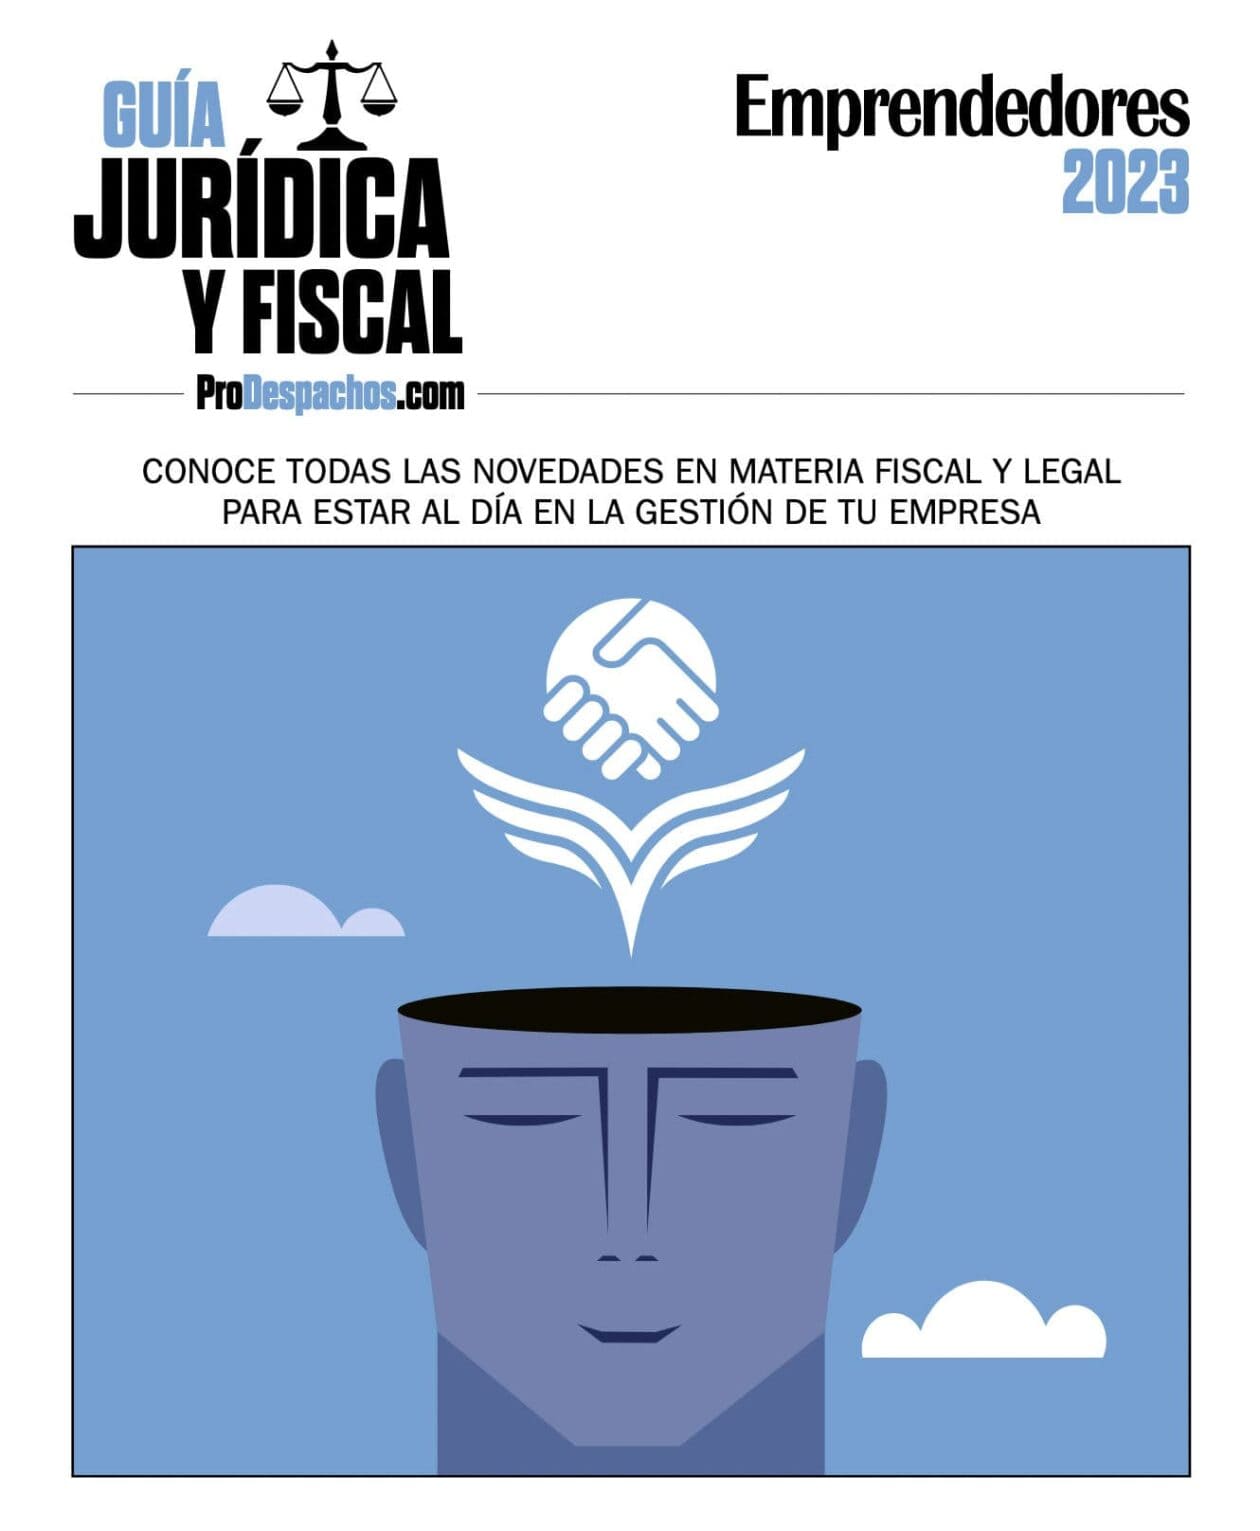 Guía Jurídica y Fiscal 2023 - Emprendedores & ProDespachos